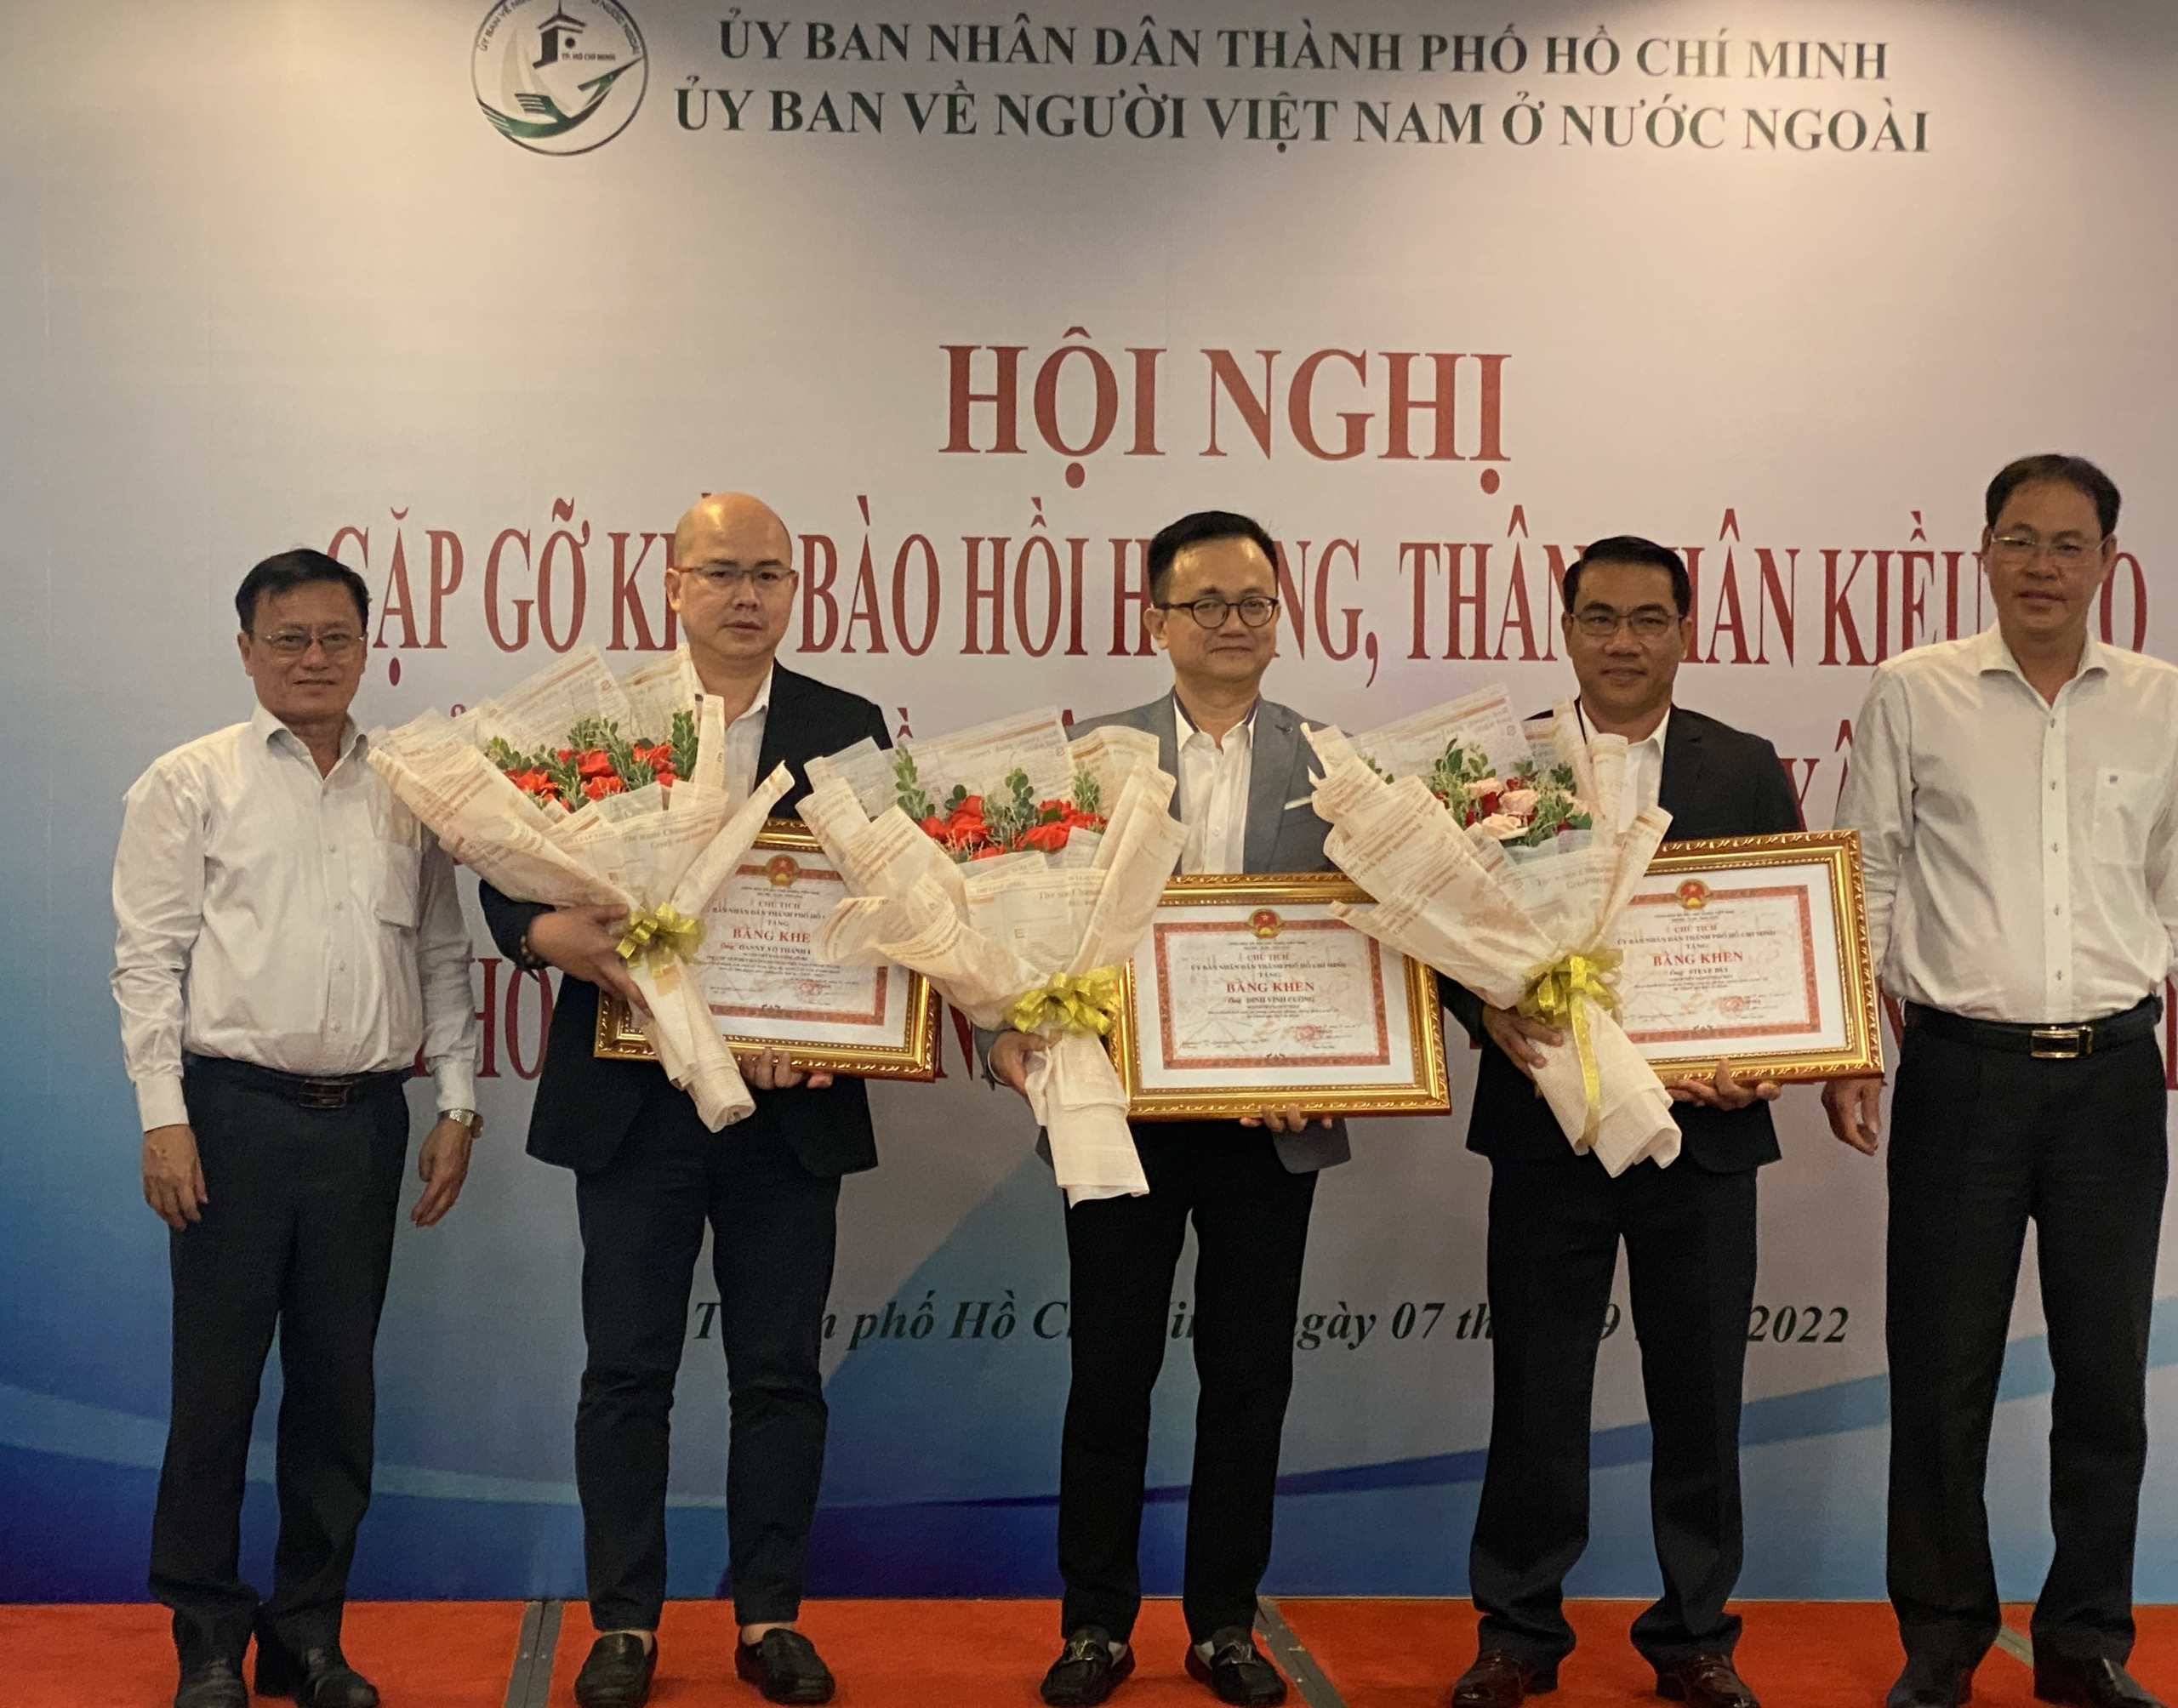 Đại diện Ủy ban MTTQ Việt Nam và Ủy ban về Người Việt Nam ở nước ngoài Thành phố, trao Bằng khen của UBND Thành phố cho các kiều bào có những đóng góp tích cực trong công tác phòng, chống dịch Covid-19 tại TP HCM.